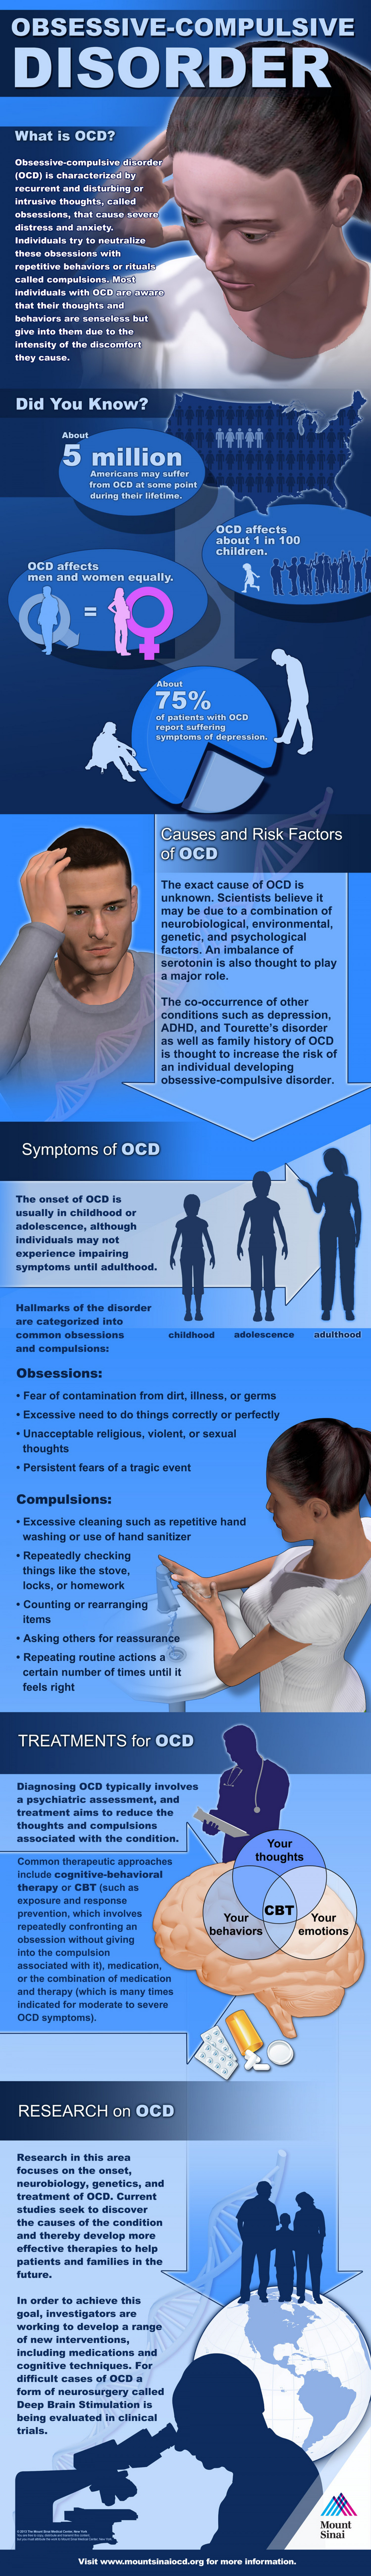 OCD Facts